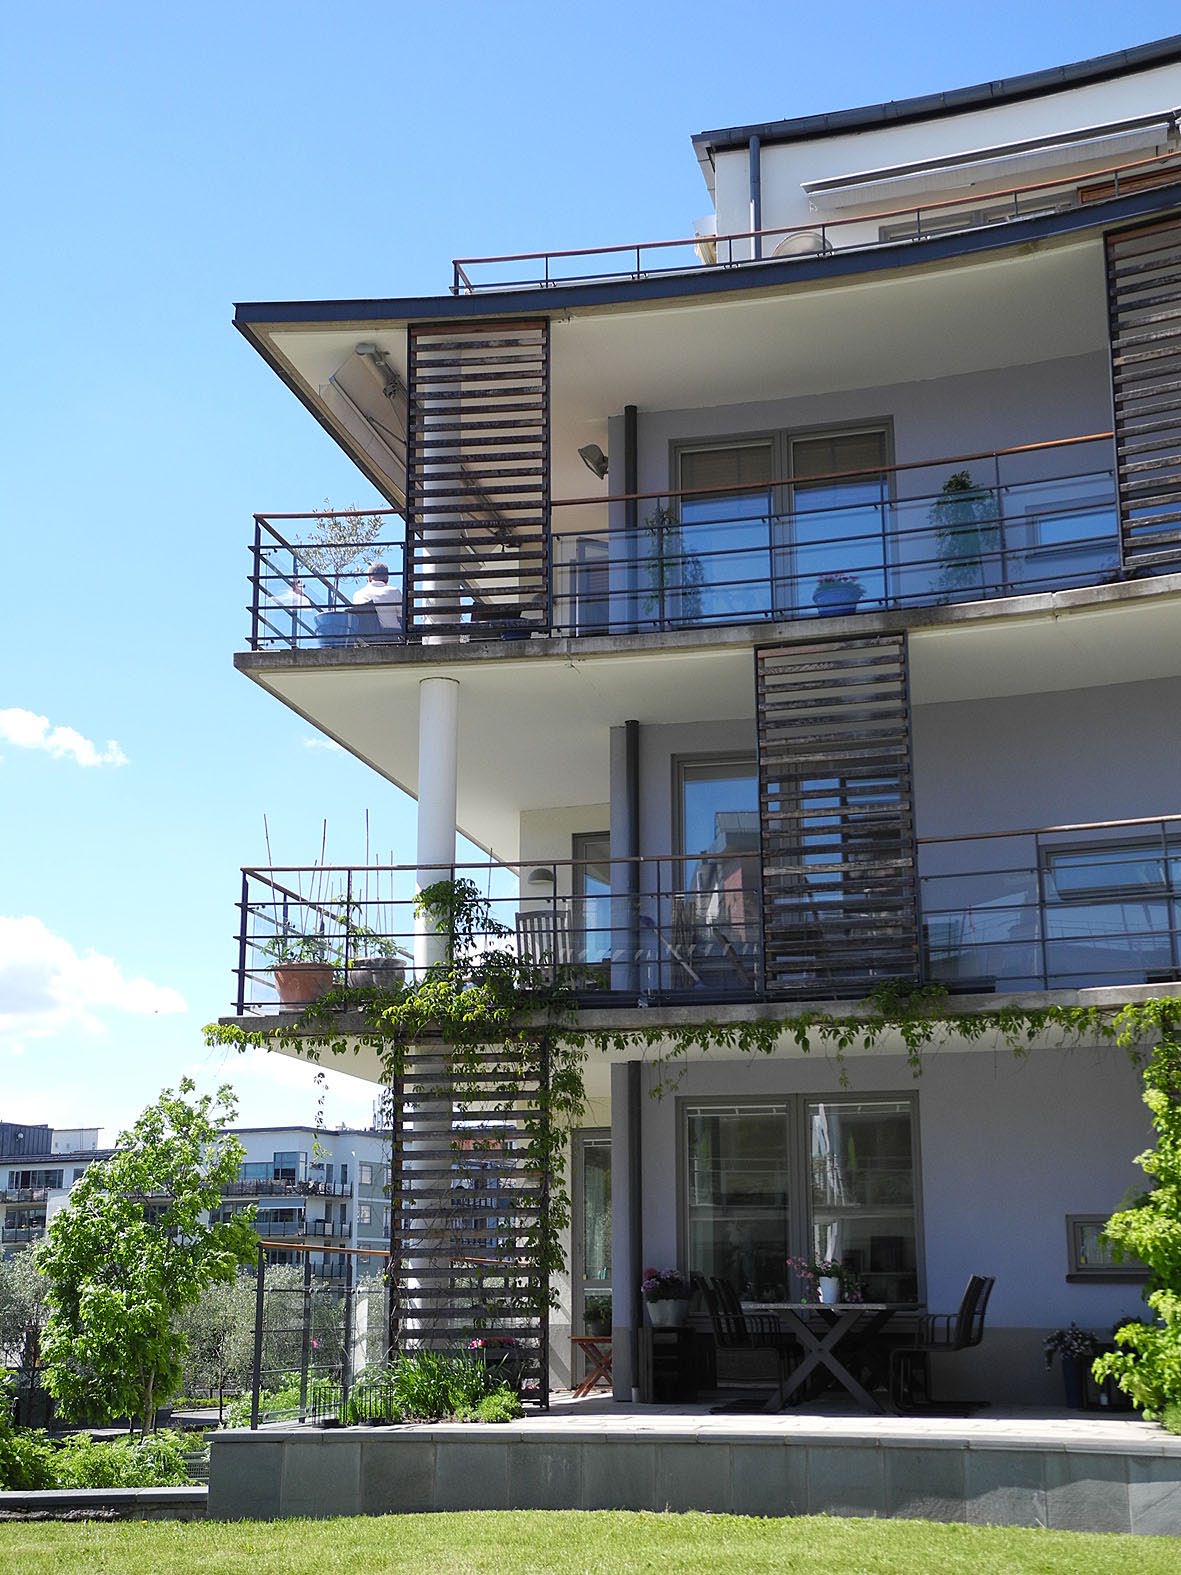 Det beskriver 94 procent att fastighetsmäklarna som säljer bostadsrätter. En balkong kan inte heller minska intresset för en bostadsrätt.